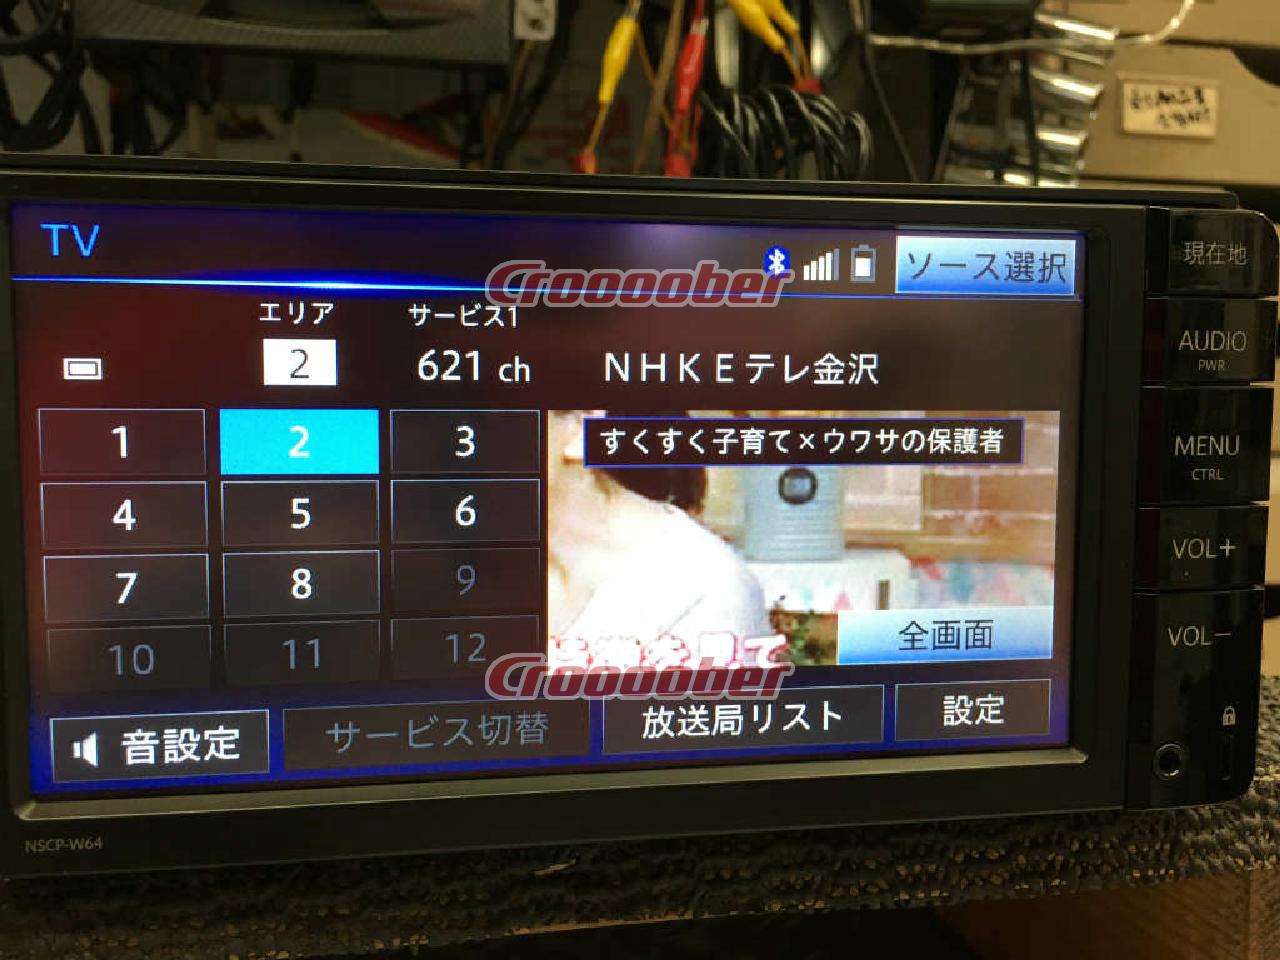 ナビ トヨタ NSCP-W64 データ 2014 NVF-1238zt